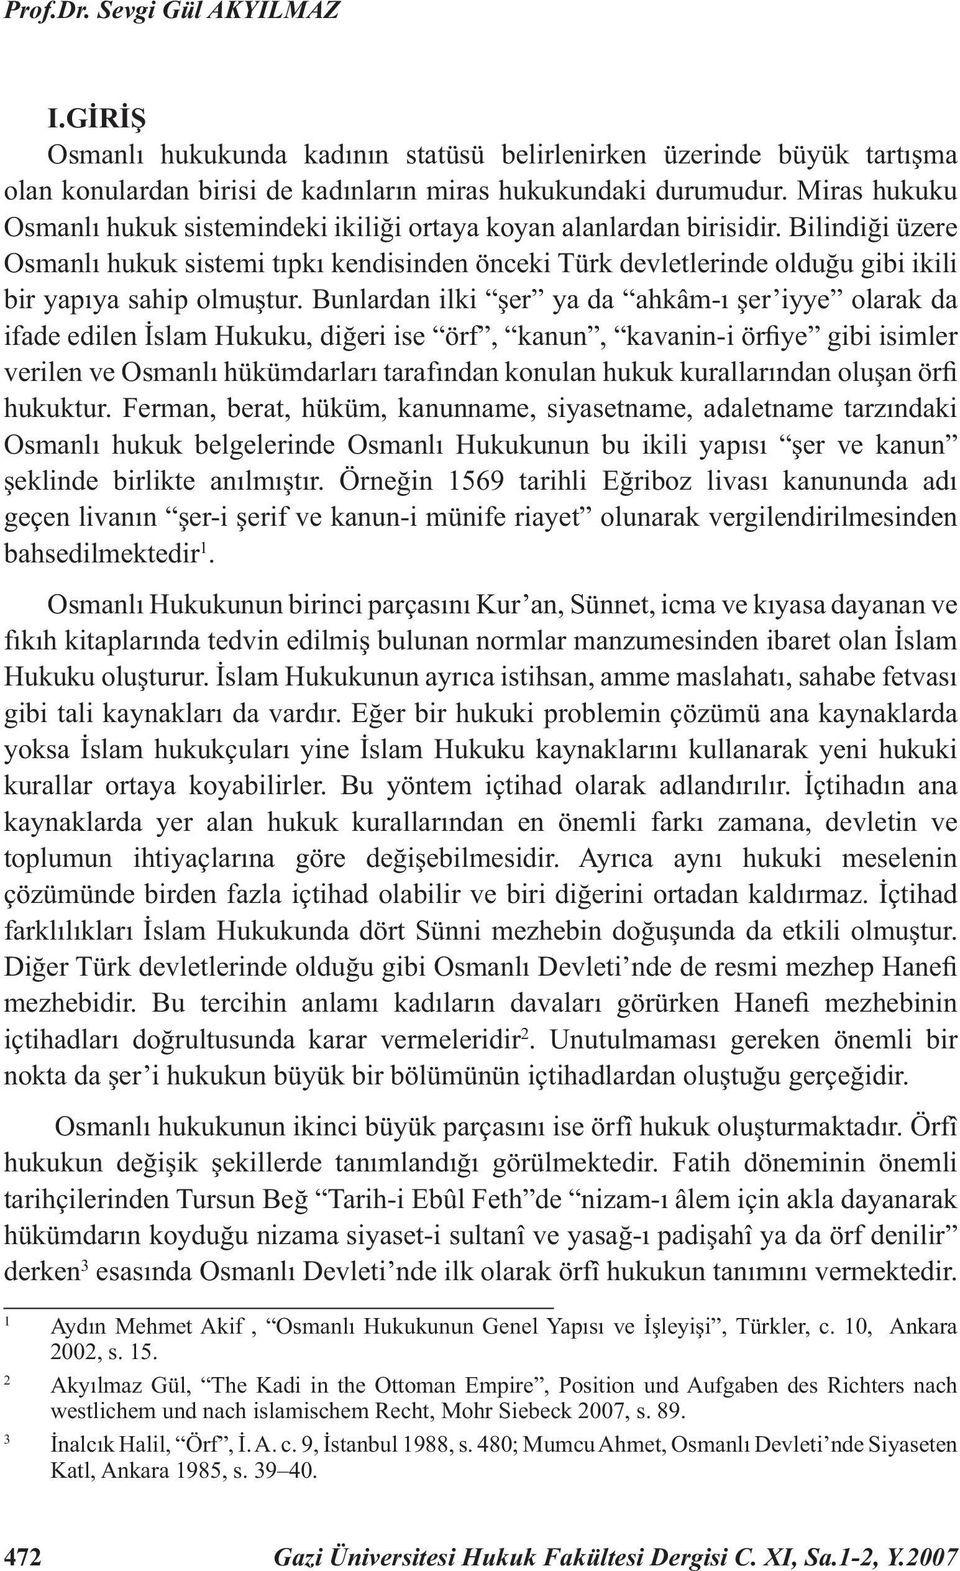 Bilindiği üzere Osmanlı hukuk sistemi tıpkı kendisinden önceki Türk devletlerinde olduğu gibi ikili bir yapıya sahip olmuştur.